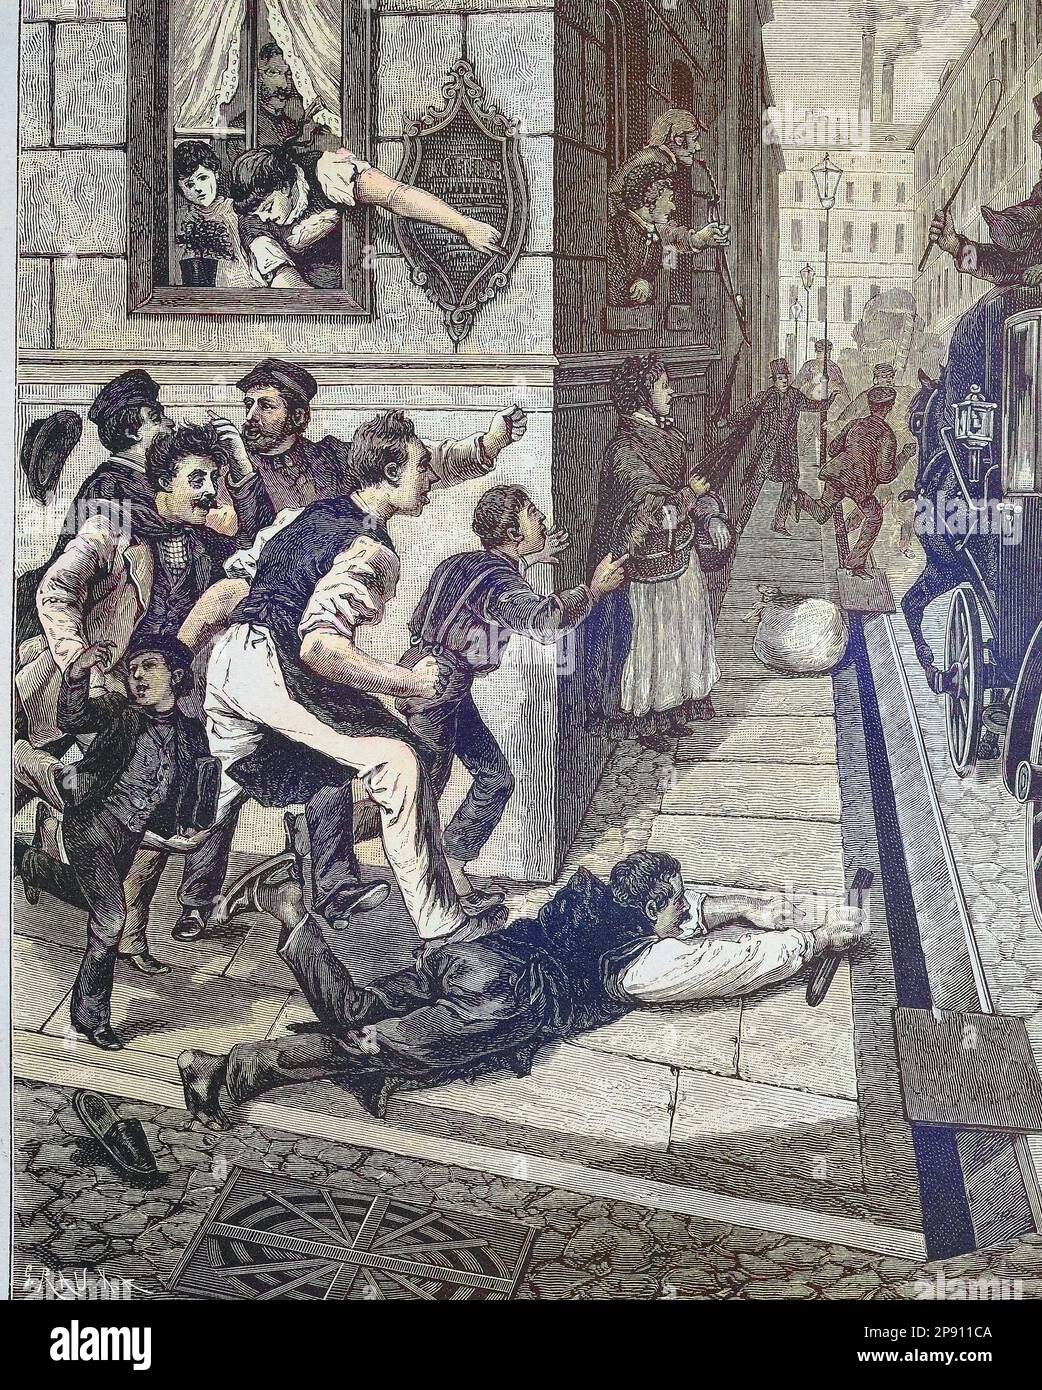 Haltet den Dieb, Leute jagen einem Taschendieb hinterher, Londres, 1885, Historisch, digital restaurierte Reproduktion von einer Vorlage aus dem 19. Jahrhundert Banque D'Images